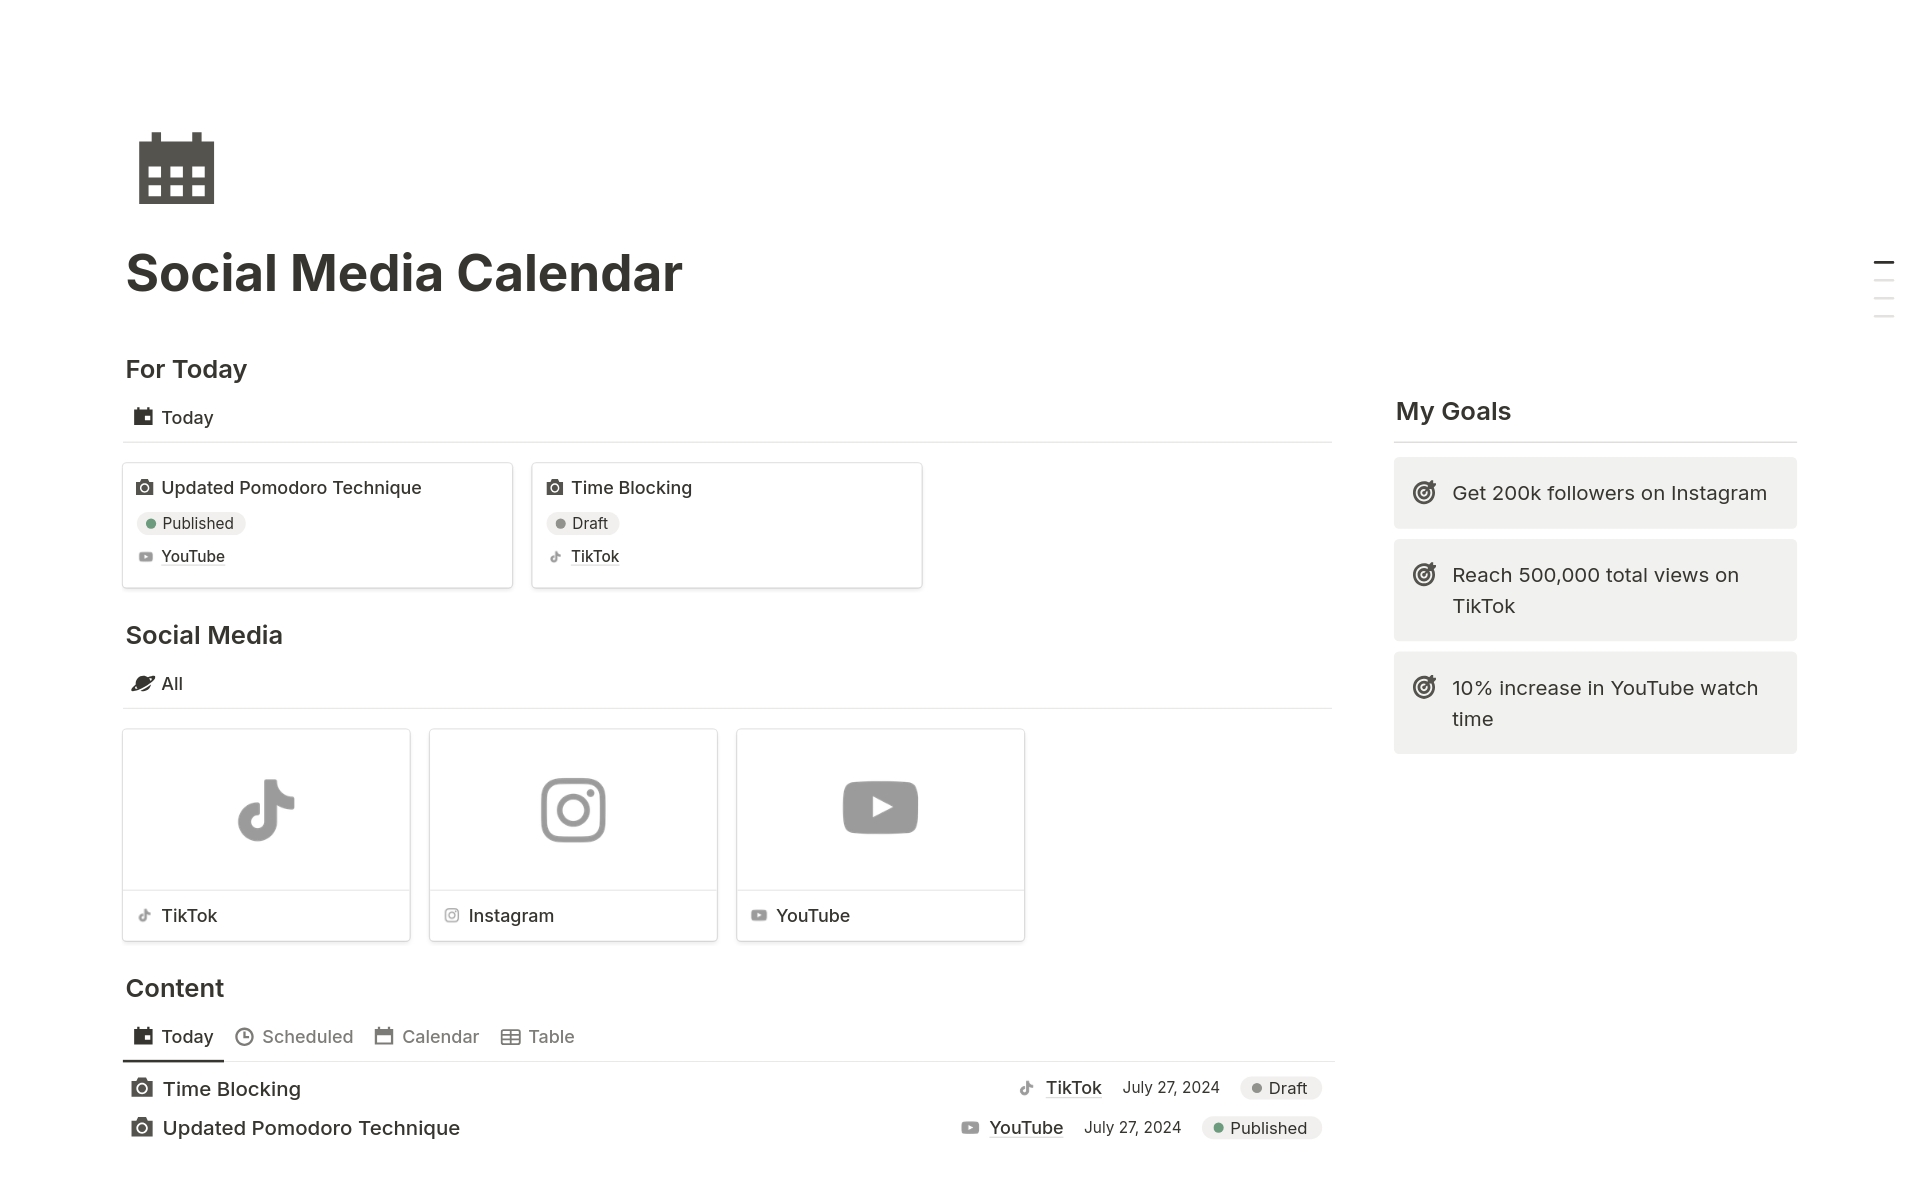 A template preview for Social Media Calendar